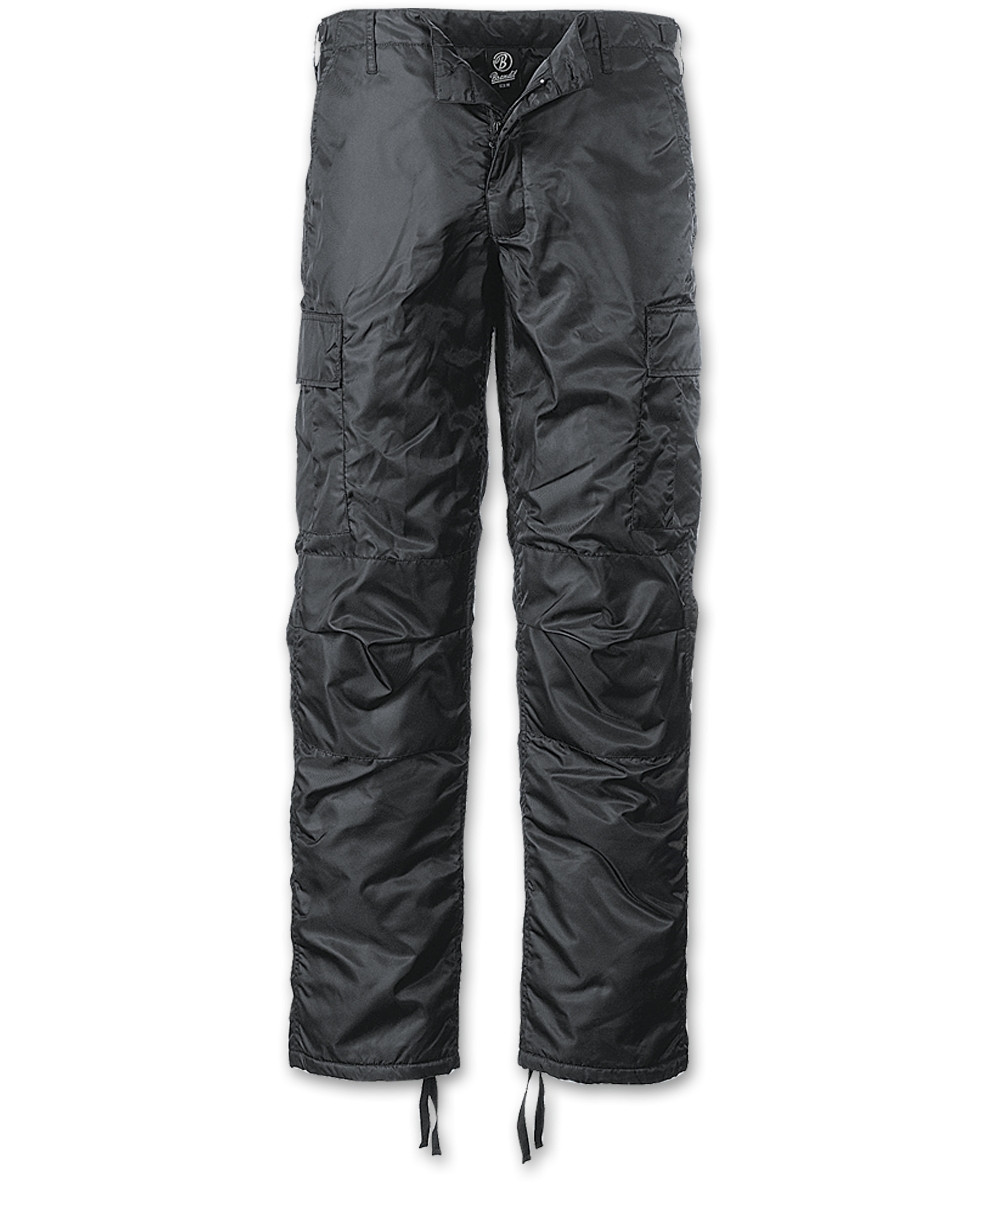 Kalhoty Brandit MA1 Thermo - černé, L